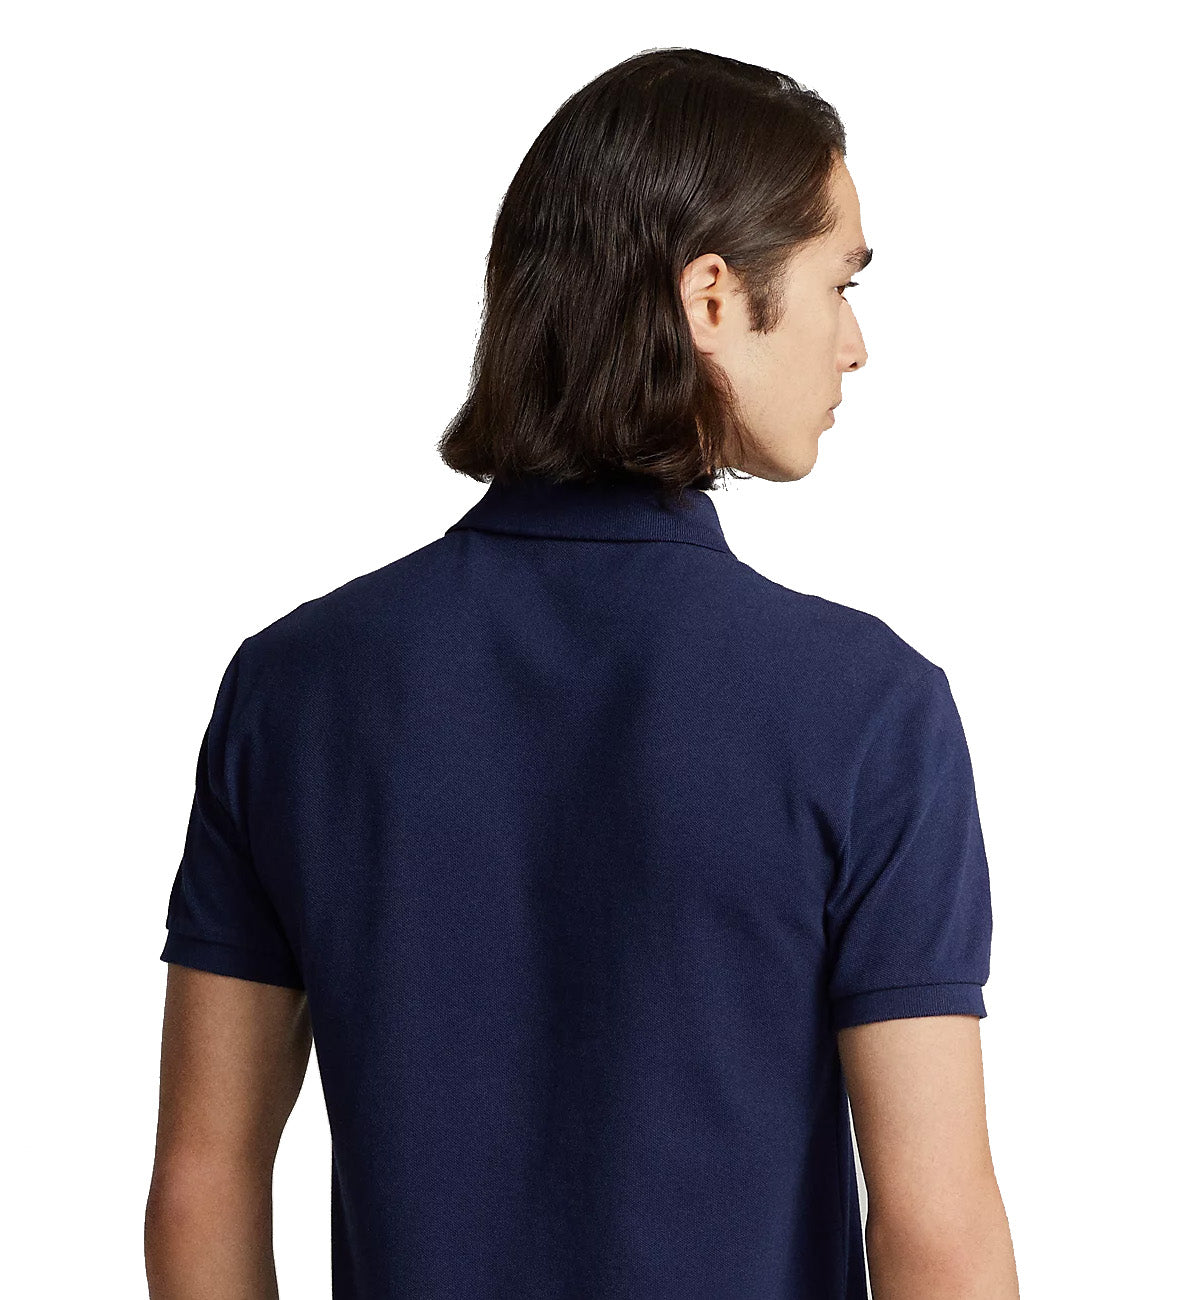 Ralph Lauren Polo T-Shirt (Navy)